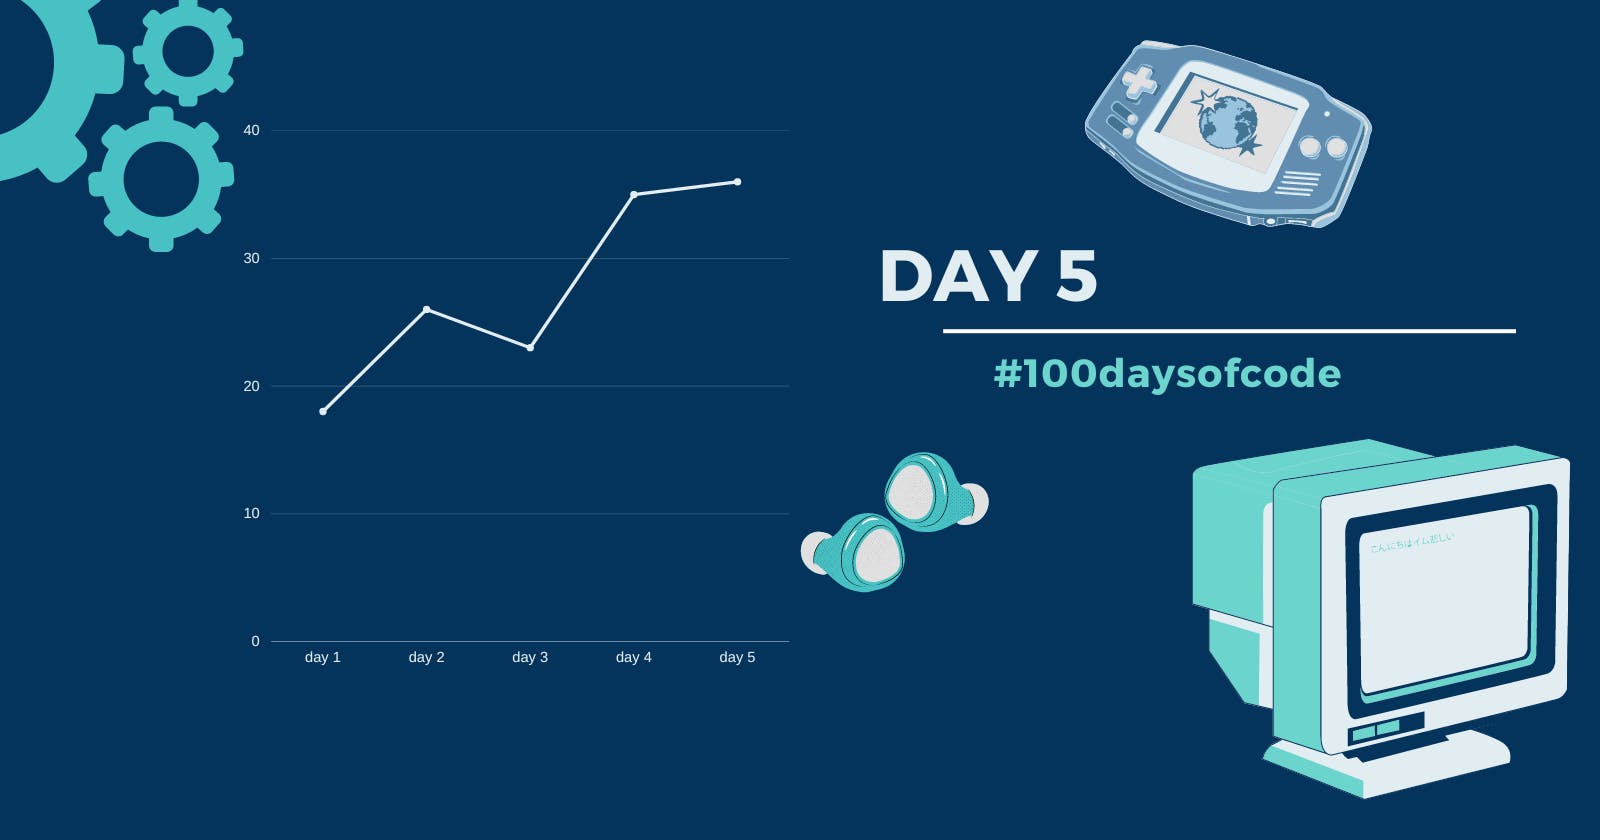 Day 5 in #100daysofcode challenge